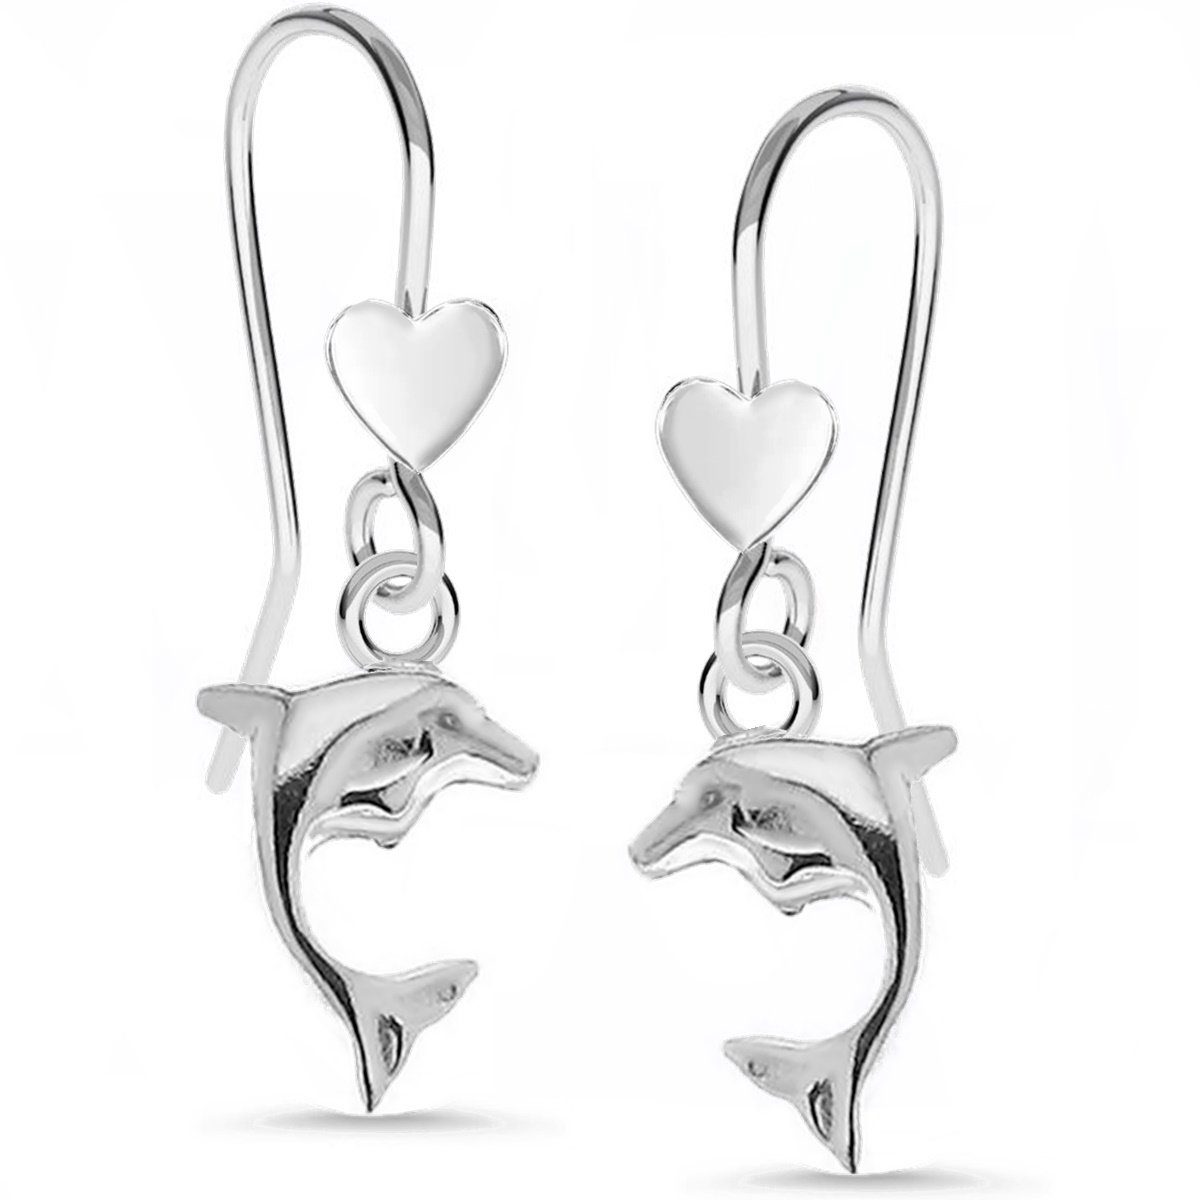 Goldene Hufeisen Paar Ohrhaken Ohrhänger, Delfine Ohrringe Herz 925 anlaufgeschützt Silber